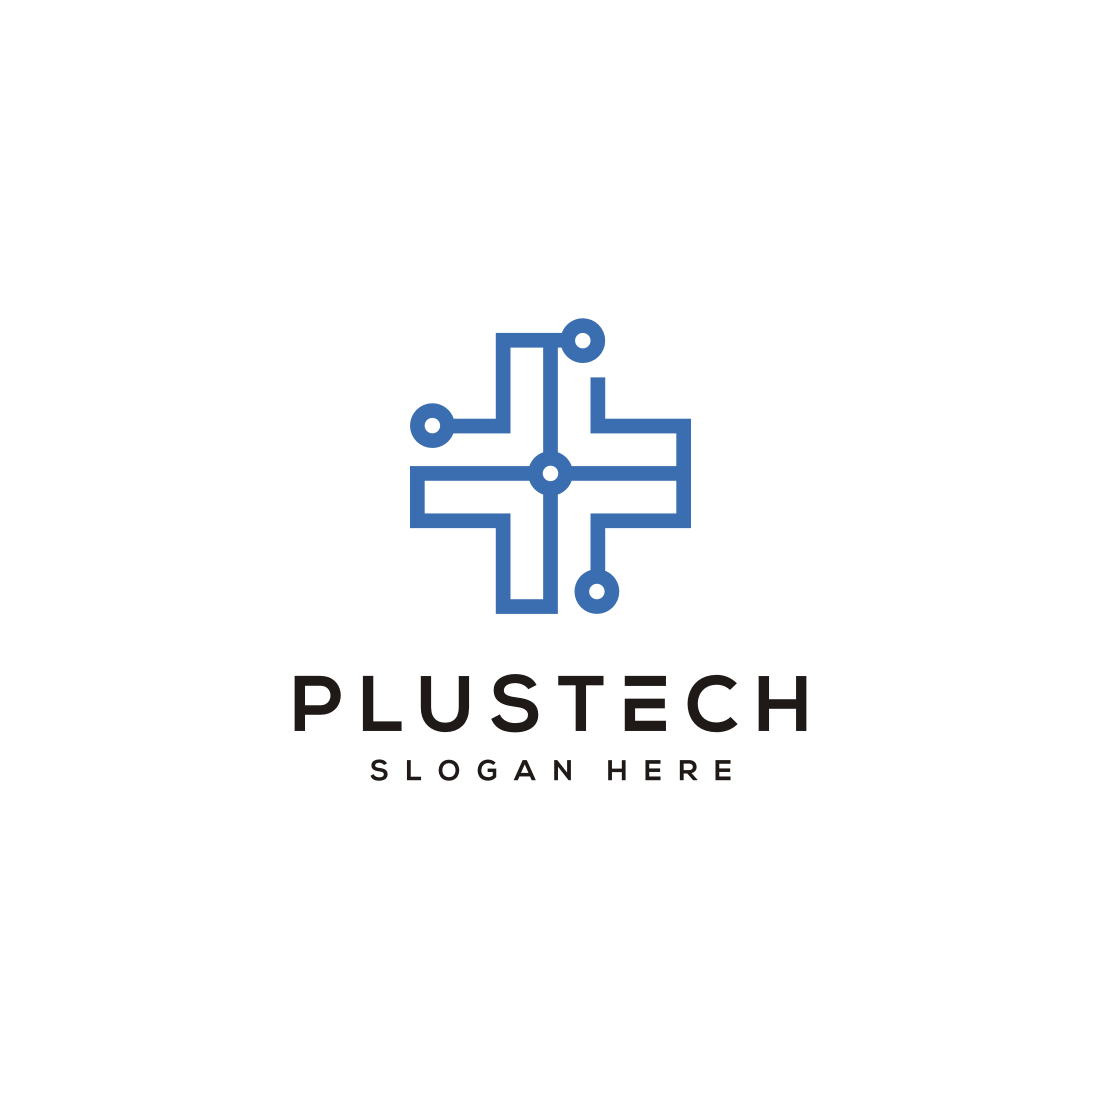 Plus Tech Logo Vector Design cover image.